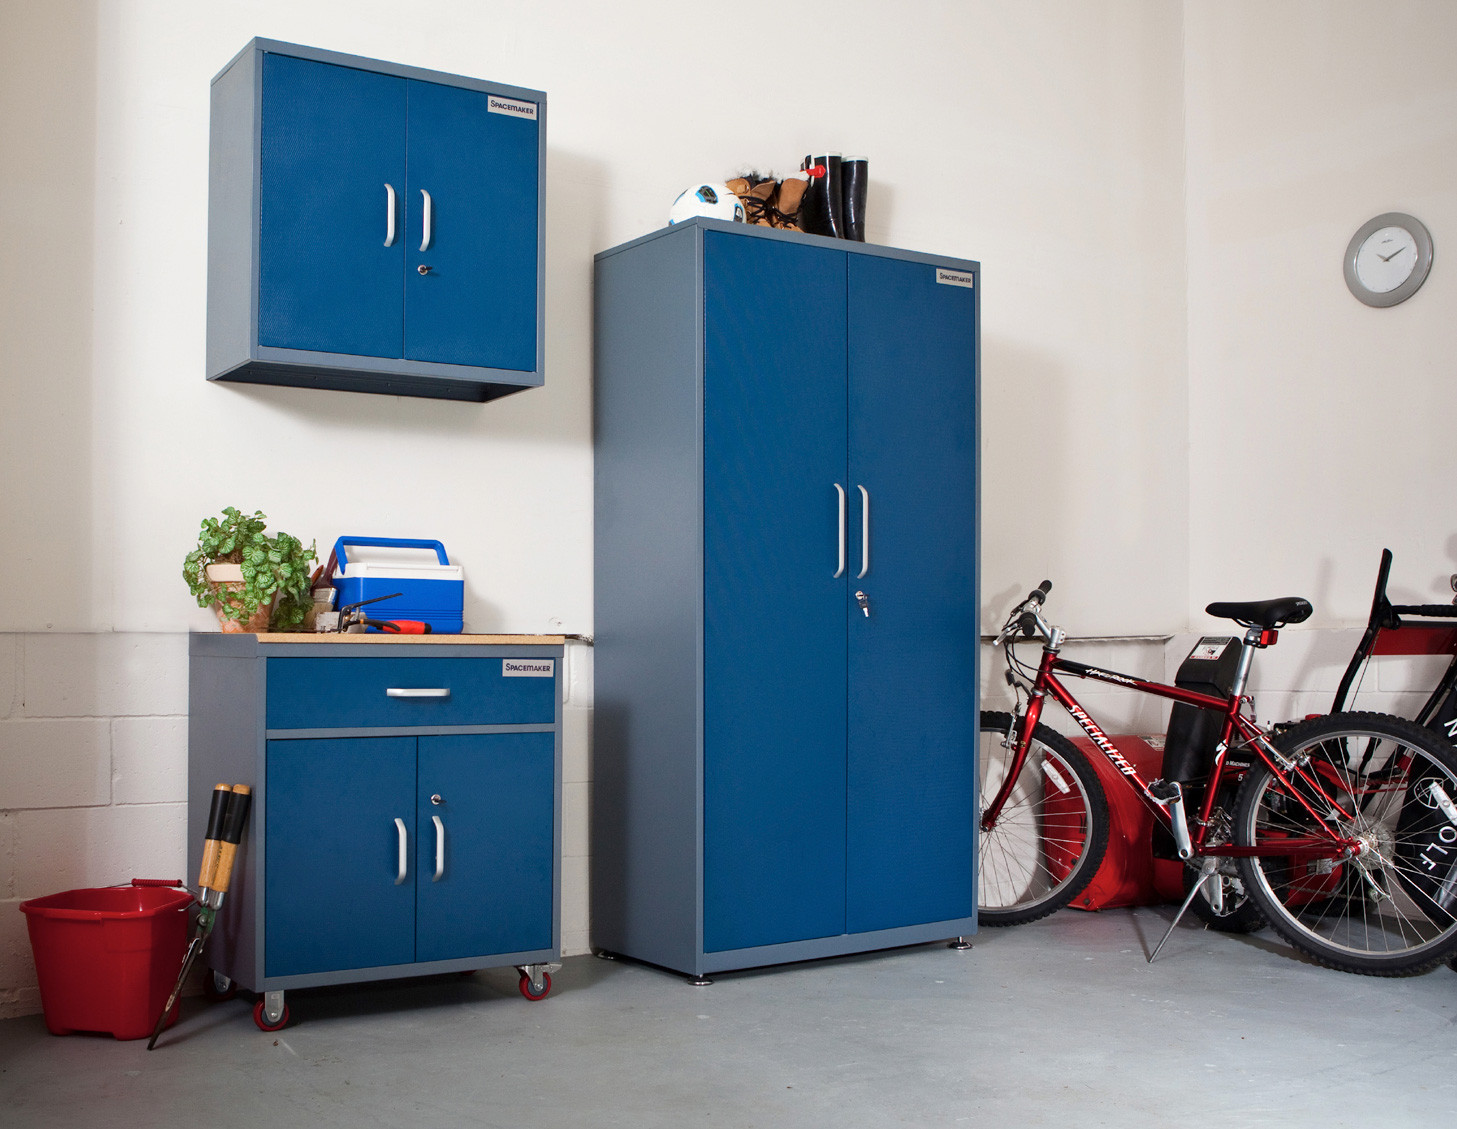 Best ideas about Metal Garage Storage Cabinets
. Save or Pin Metal garage storage cabinets Now.